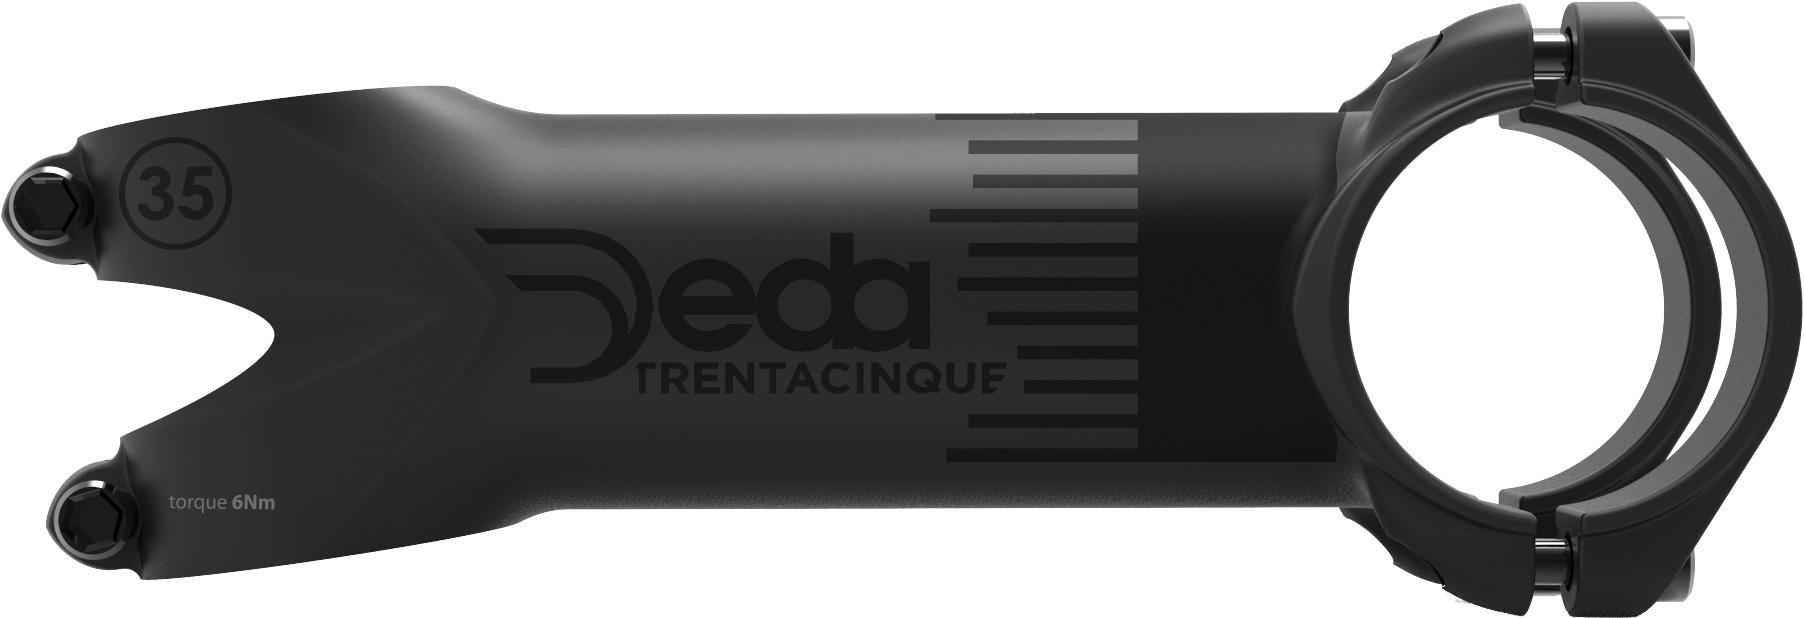 Deda Trentacinque 35 Stem - Polished Black